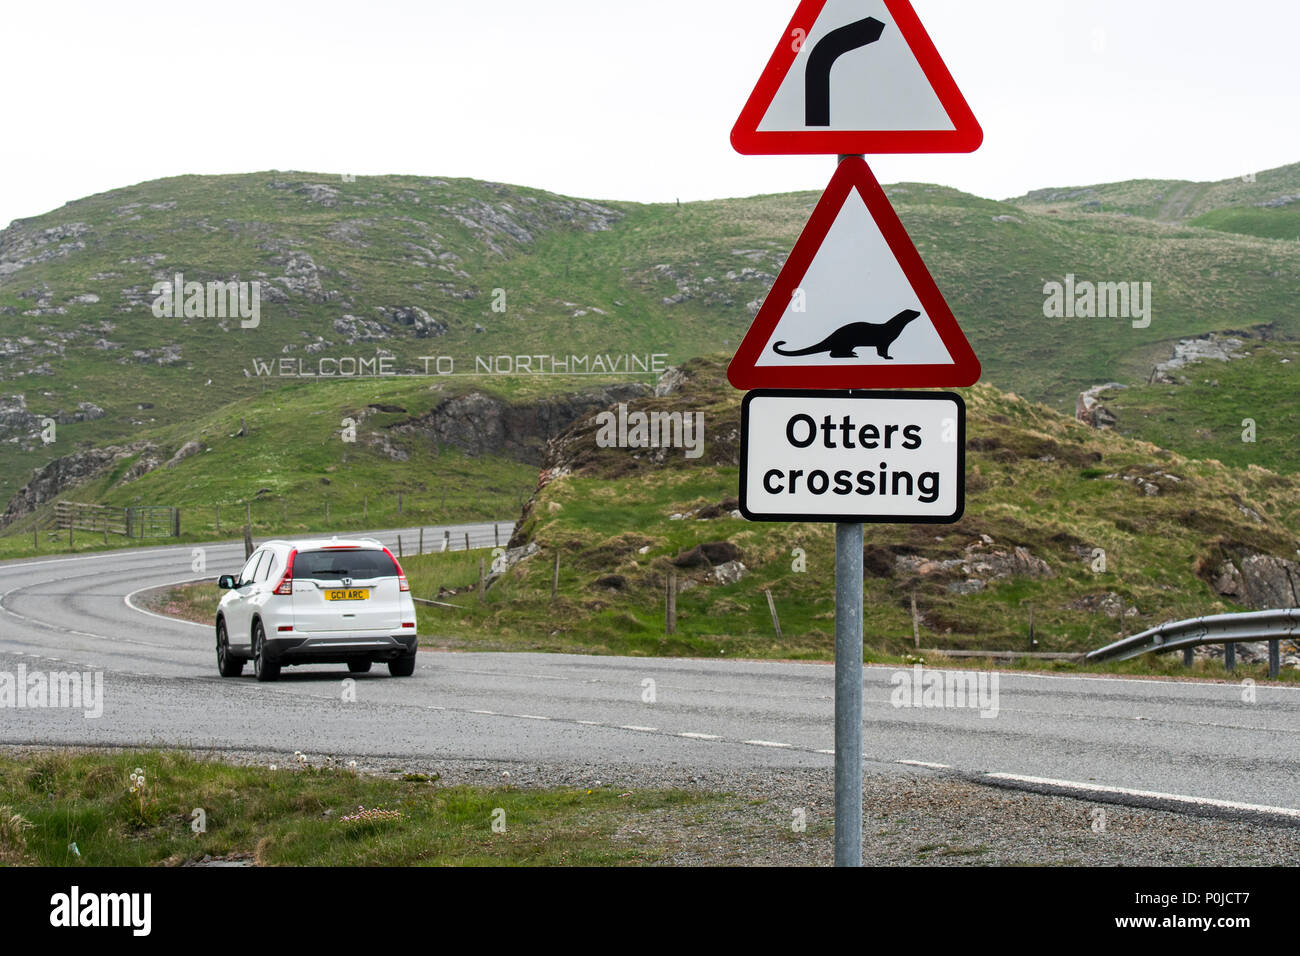 La loutre eurasienne / loutre d'Europe (Lutra lutra) route panneau d'avertissement pour les loutres crossing street à Mavis Grind dans Northmavine, îles Shetland, Écosse, Royaume-Uni Banque D'Images